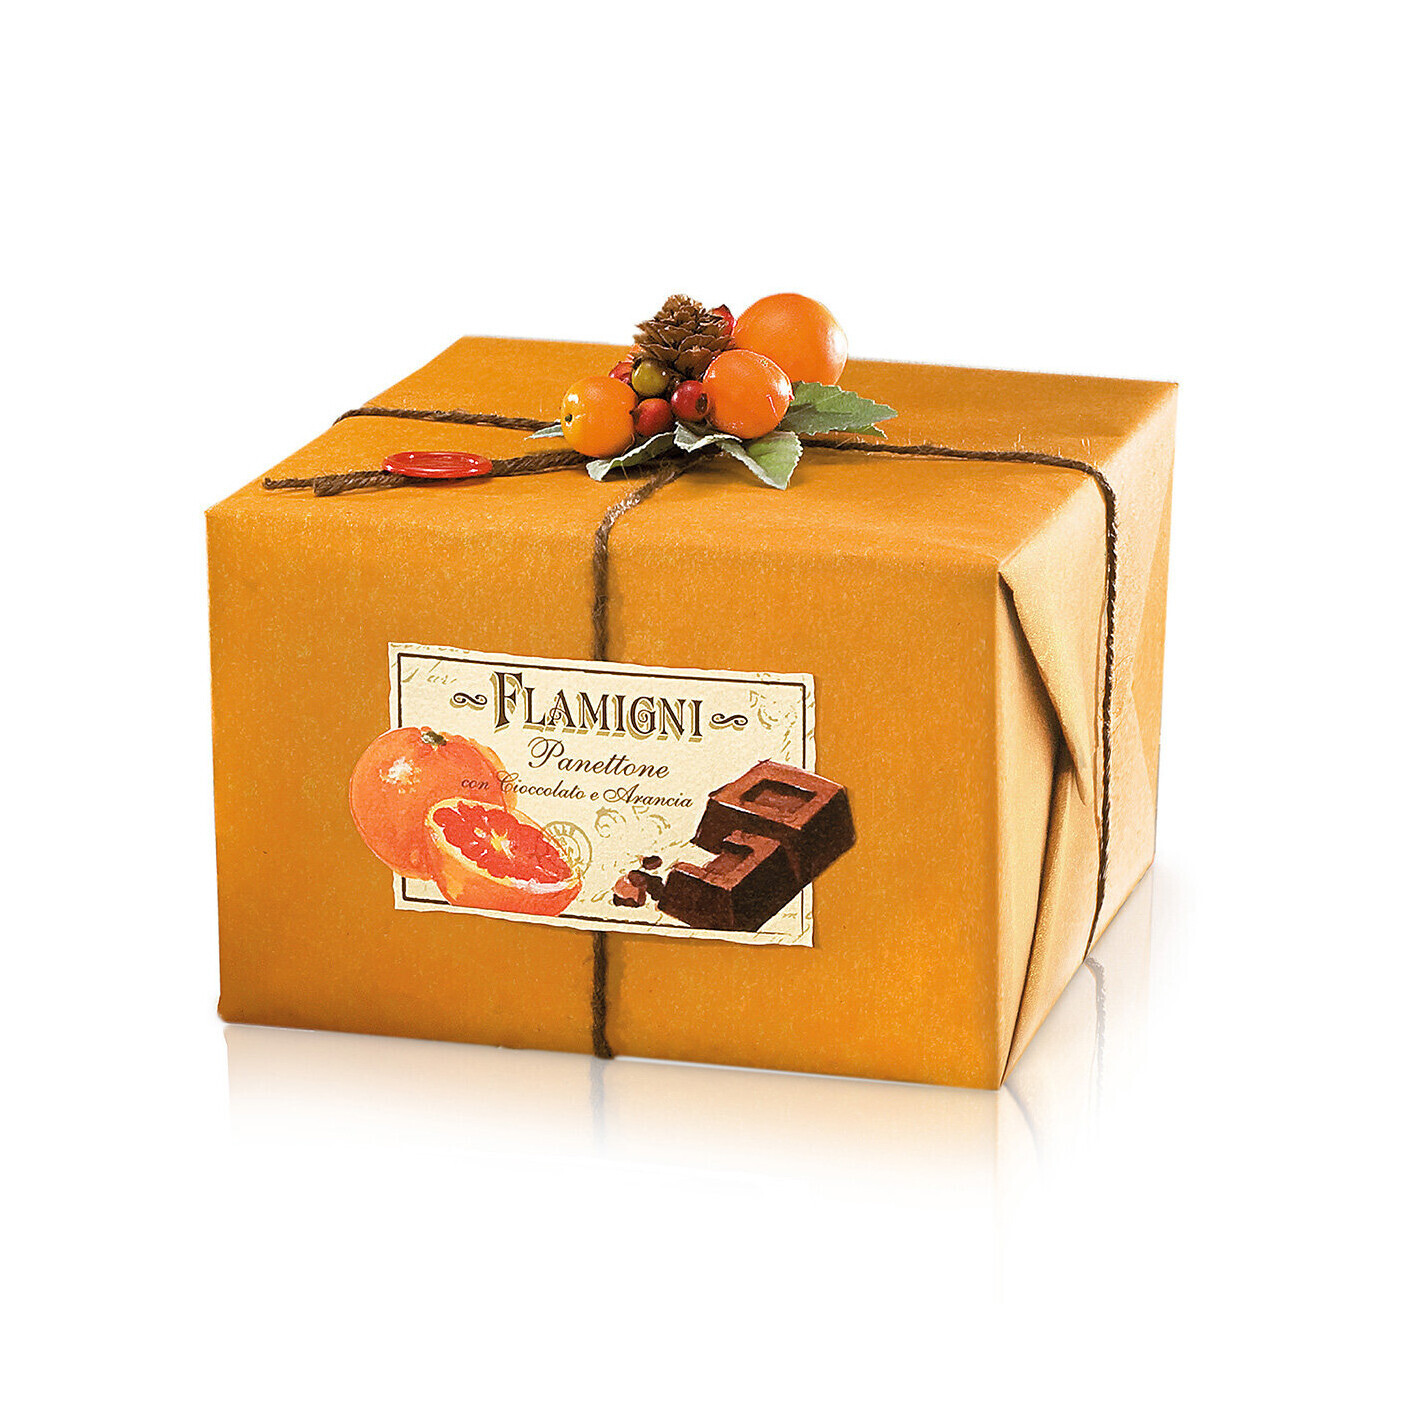 Flamigni - Panettone Arancia e Cioccolato - 1000g